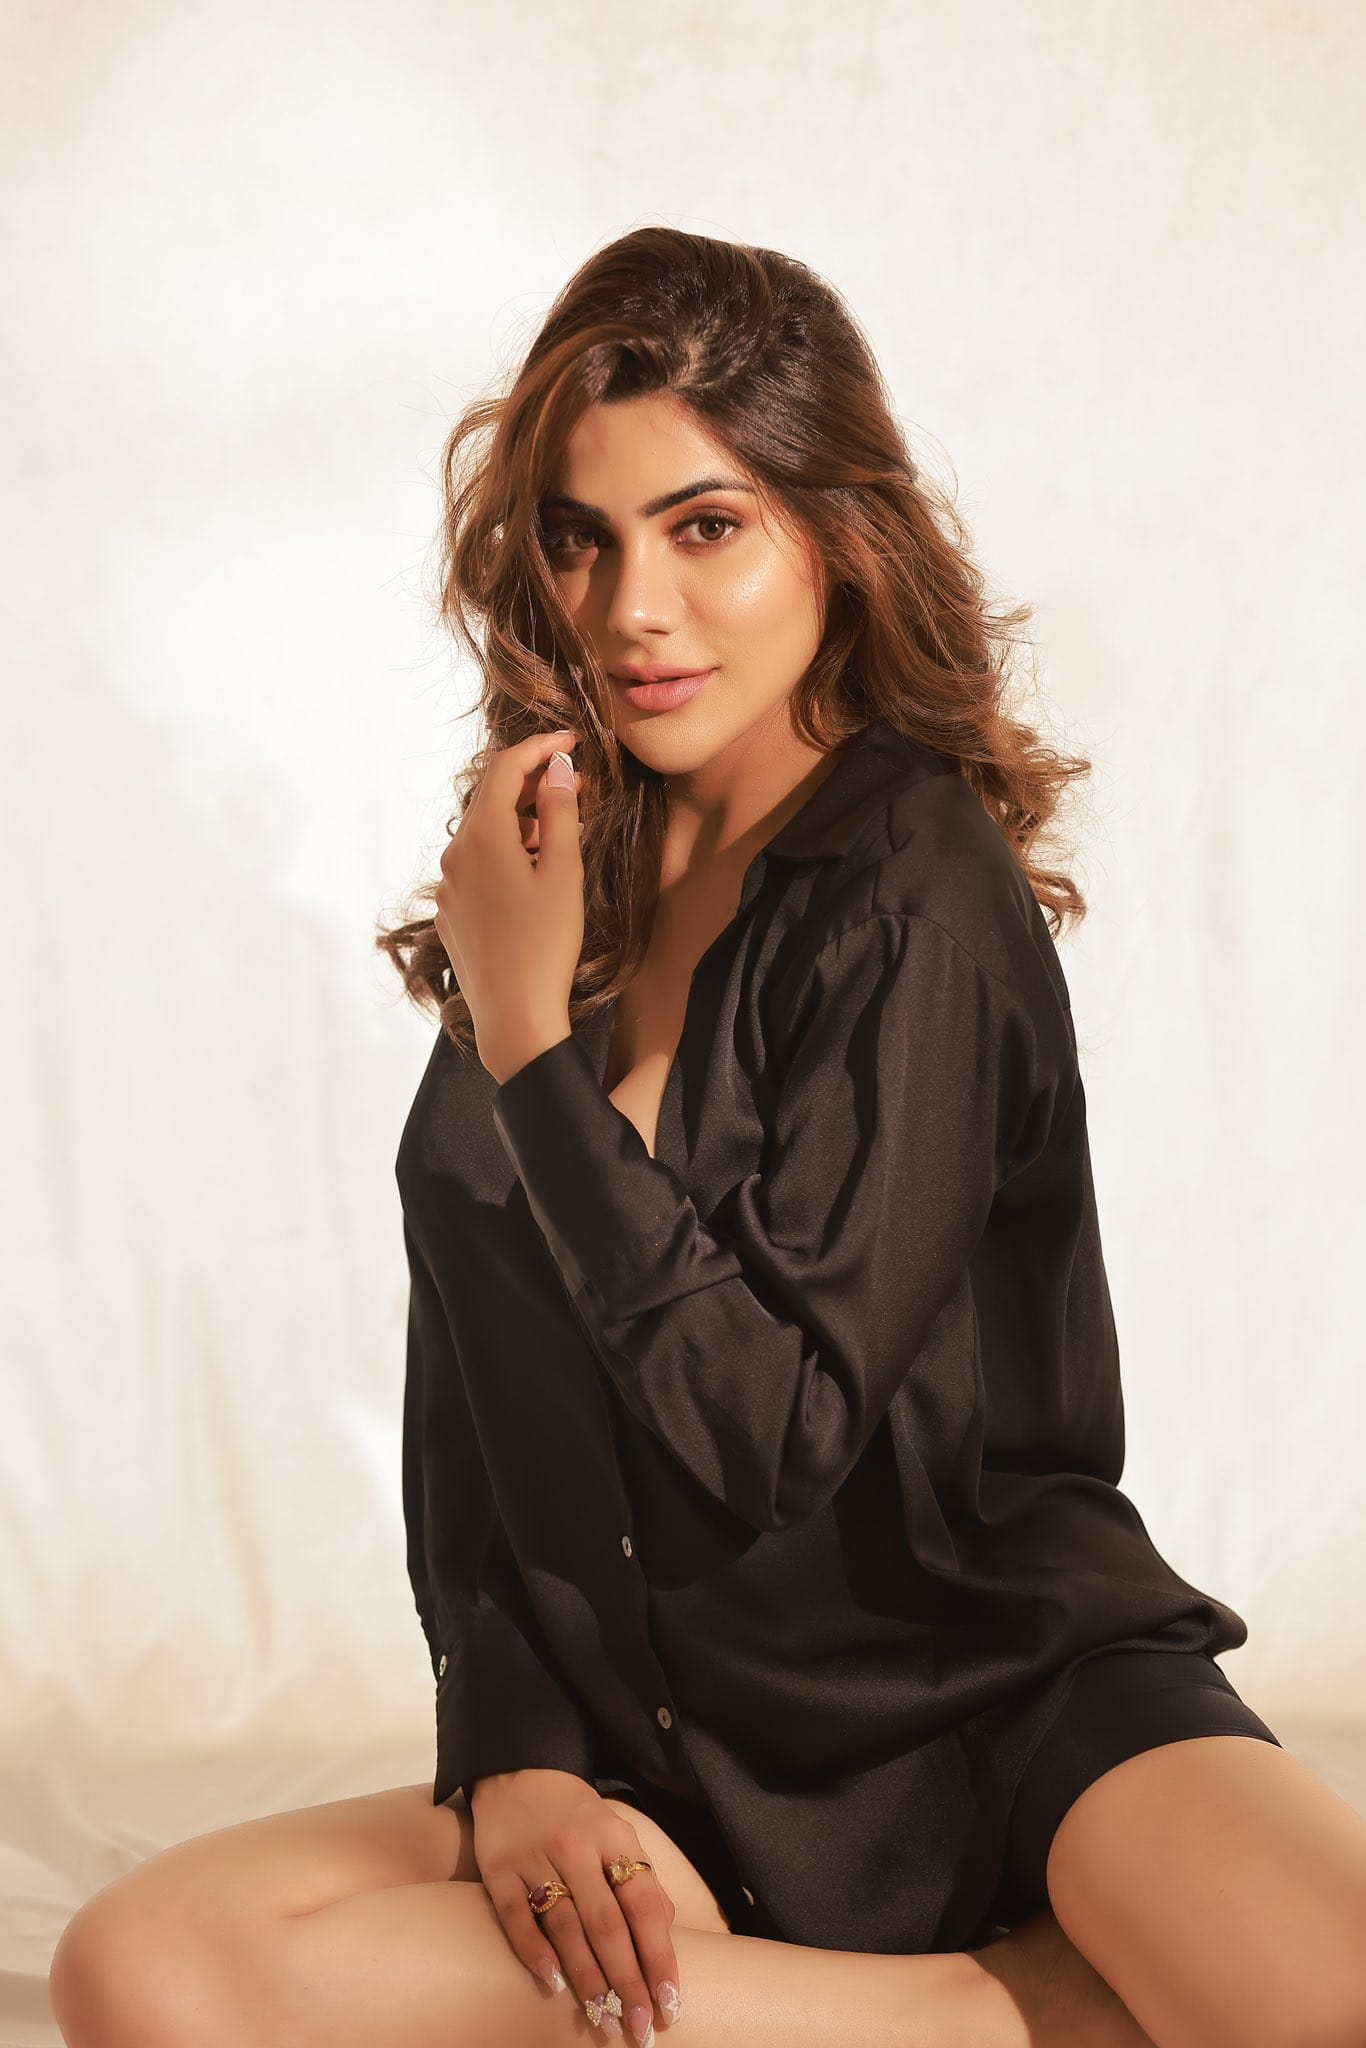 Nikki Tamboli elegant looks in black shirt